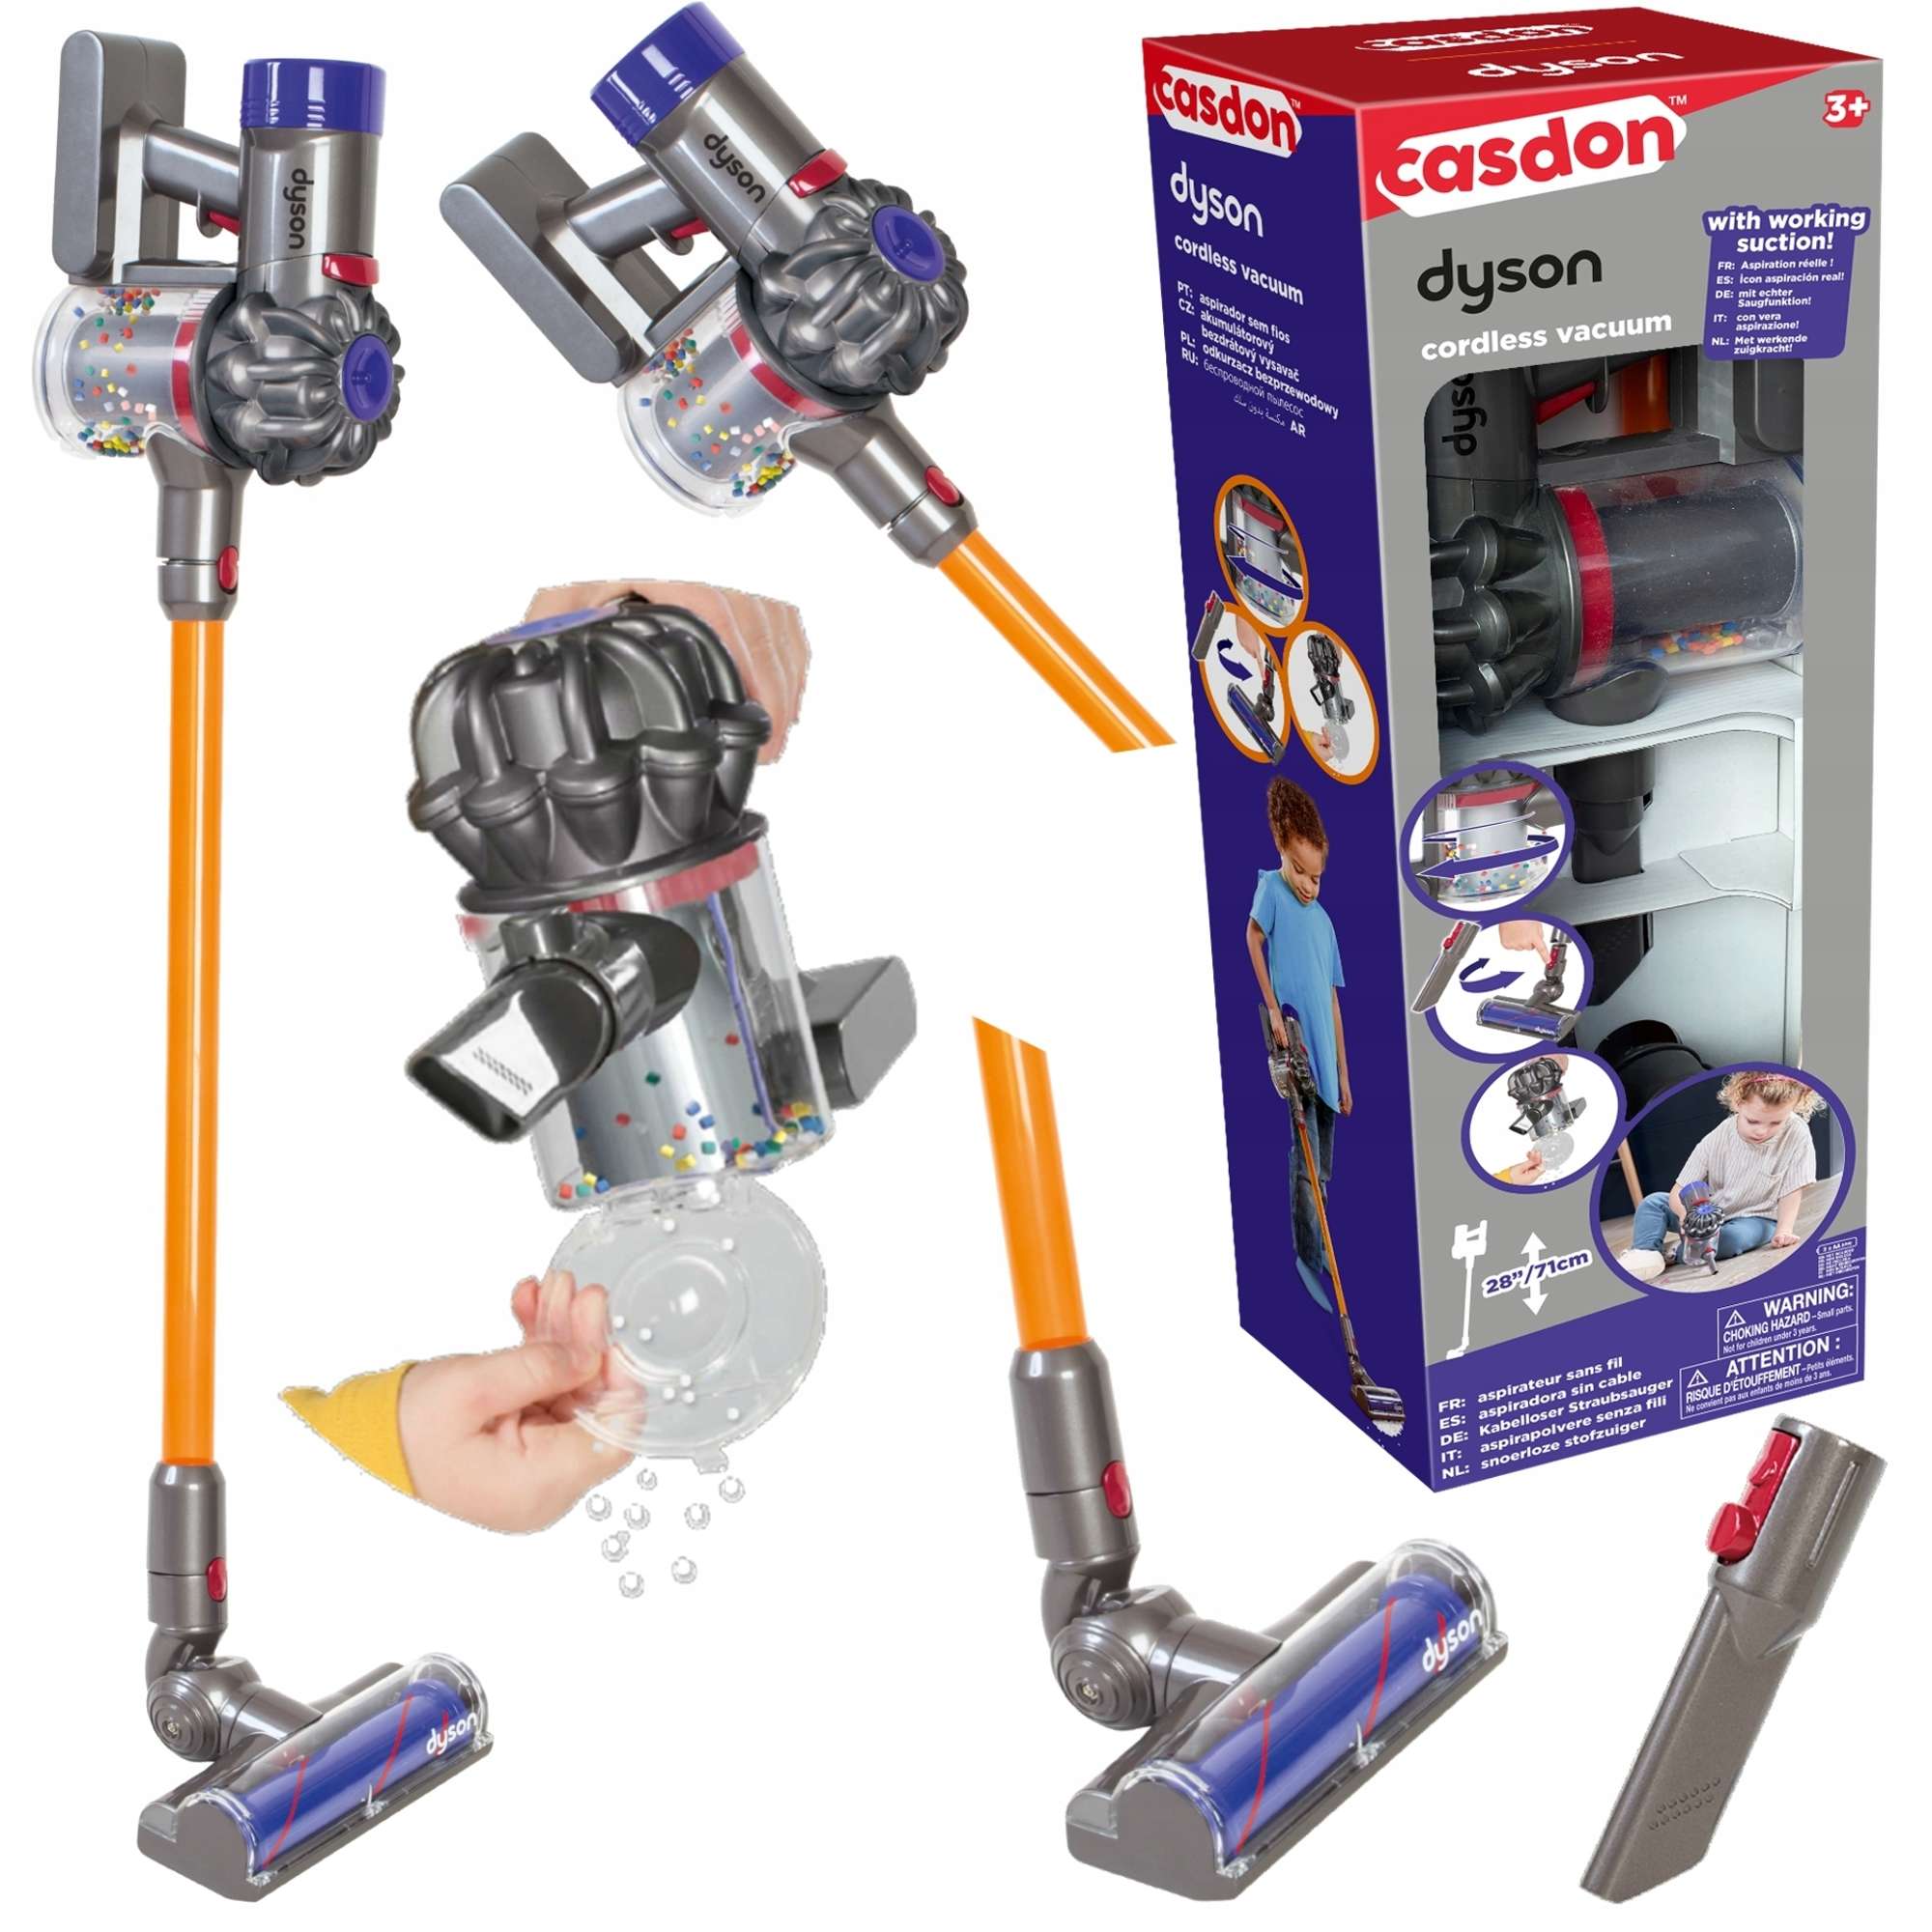 Casdon Dyson interaktive Vakuum Upright Spielzeug Staubsaug für Kinder Cordless